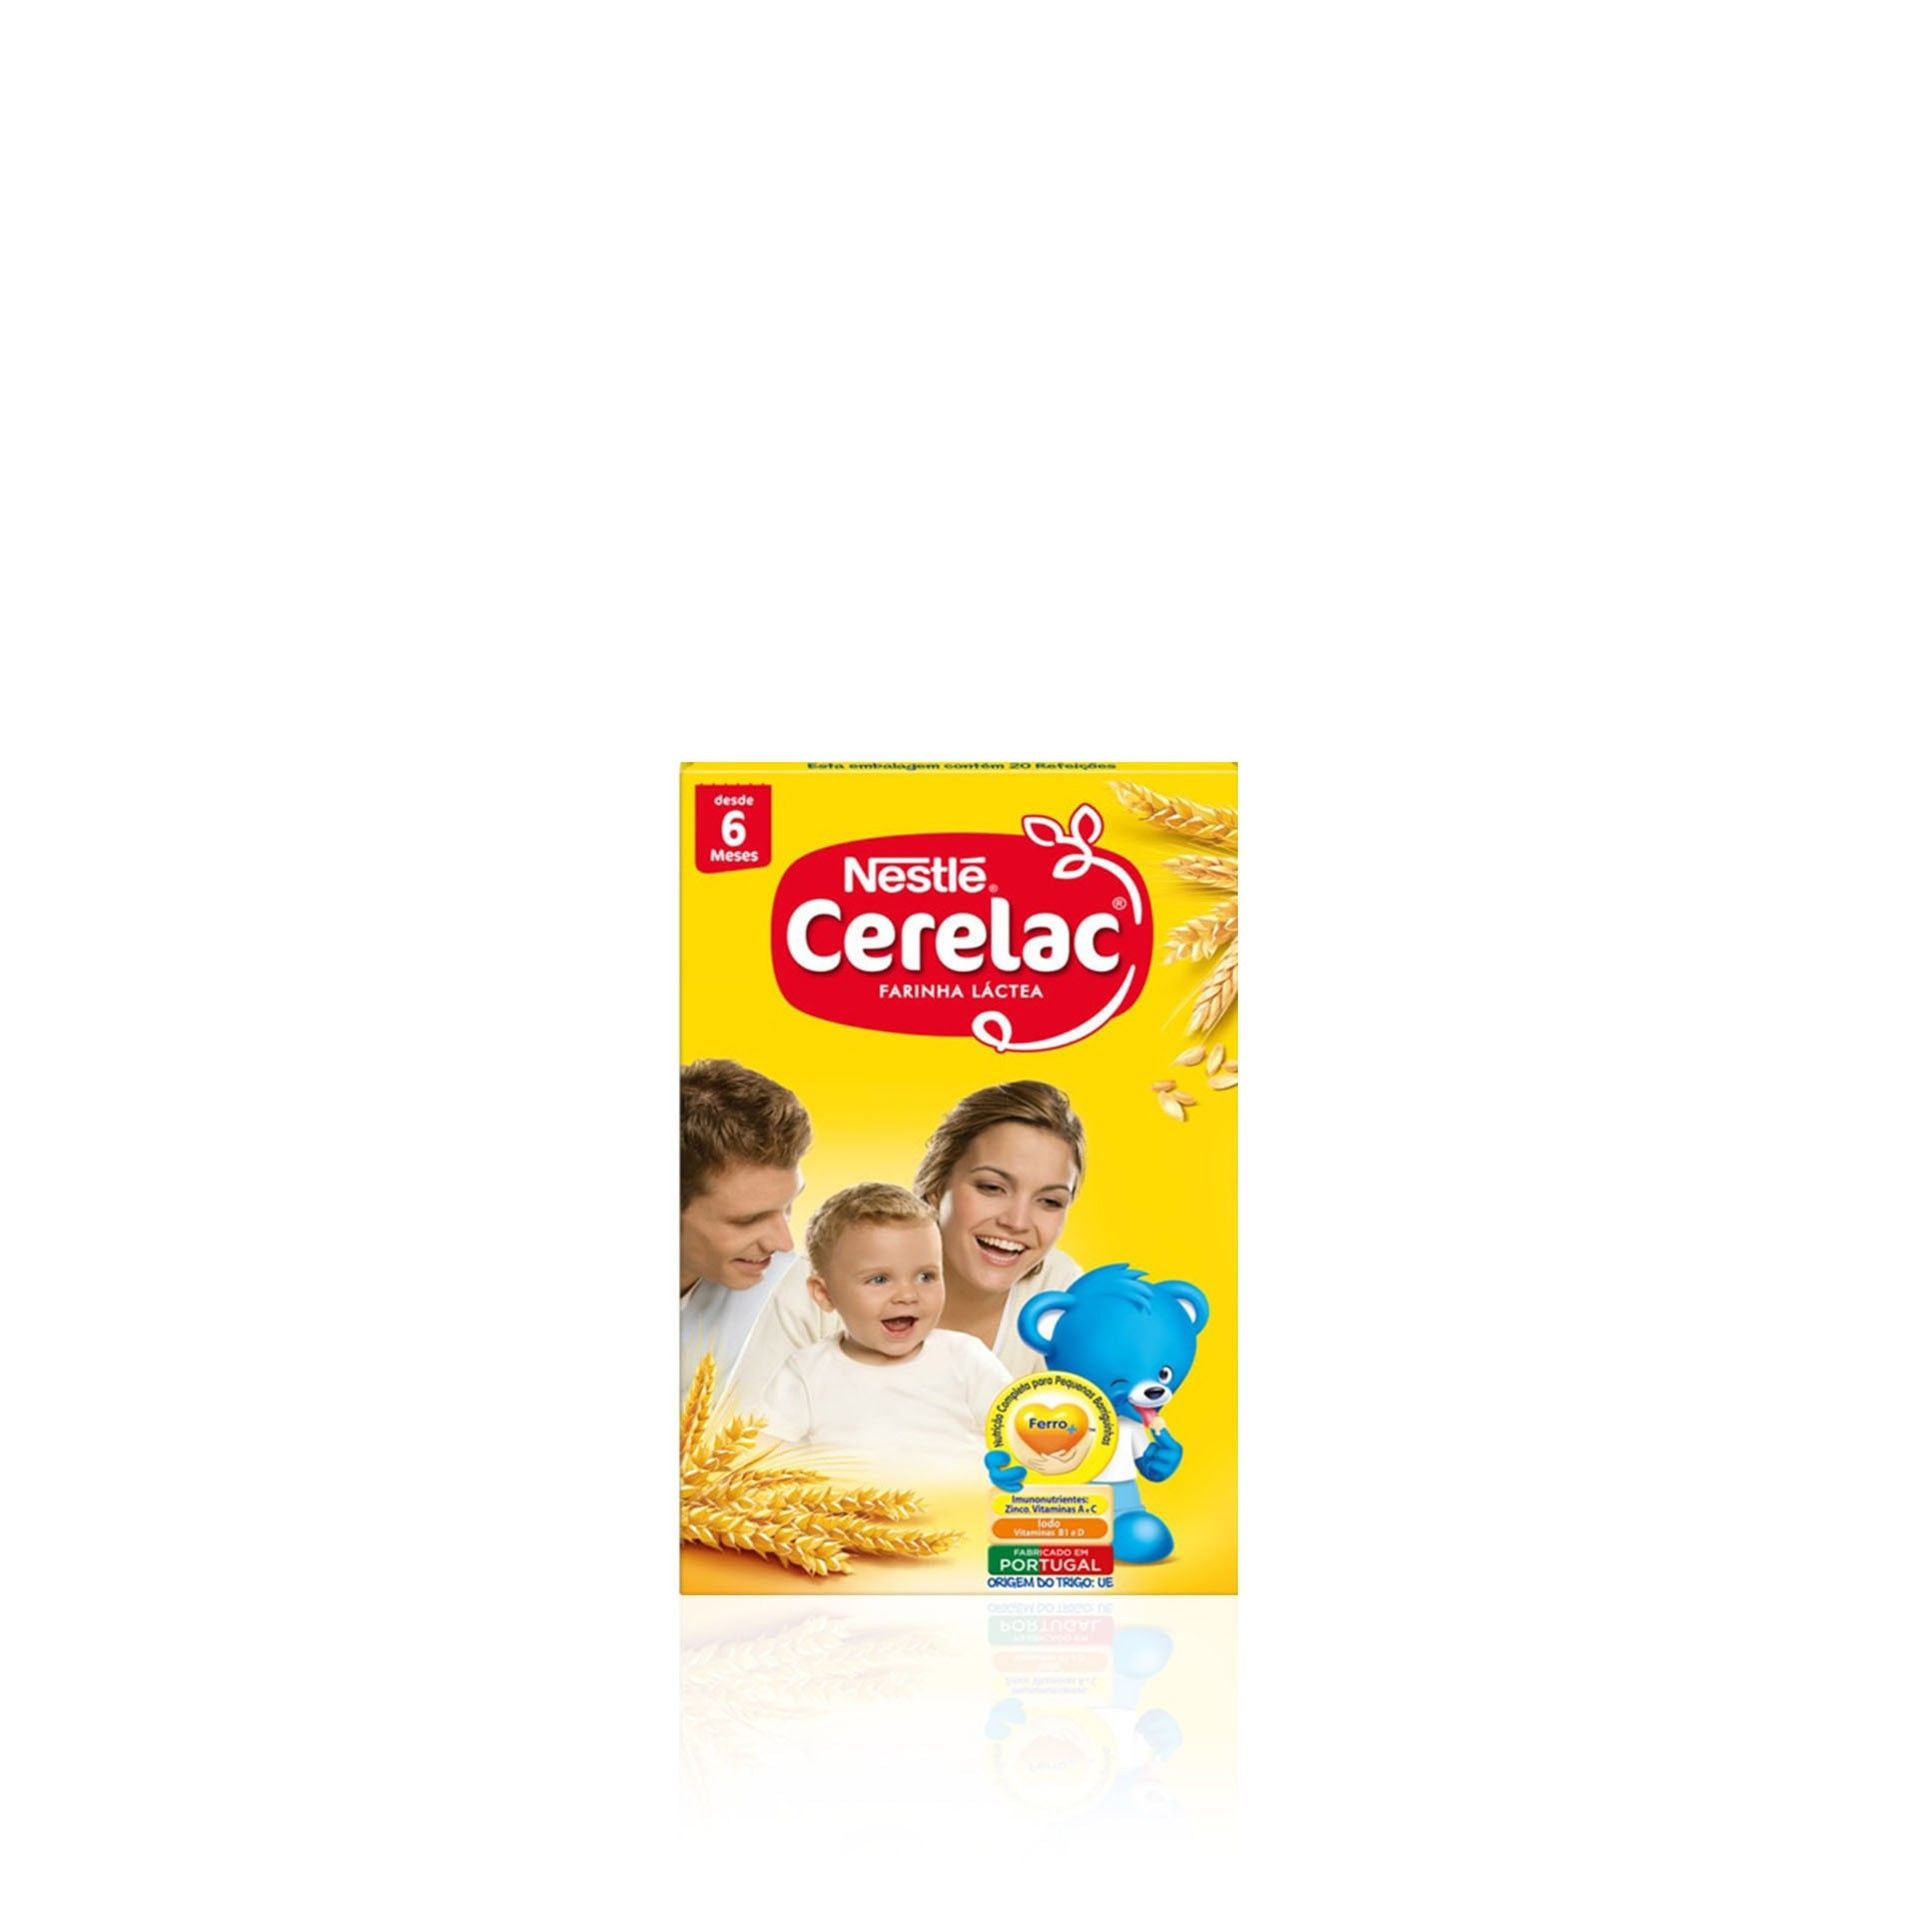 Nestlé Cerelac Leche Harina (+6 meses) 900 gr